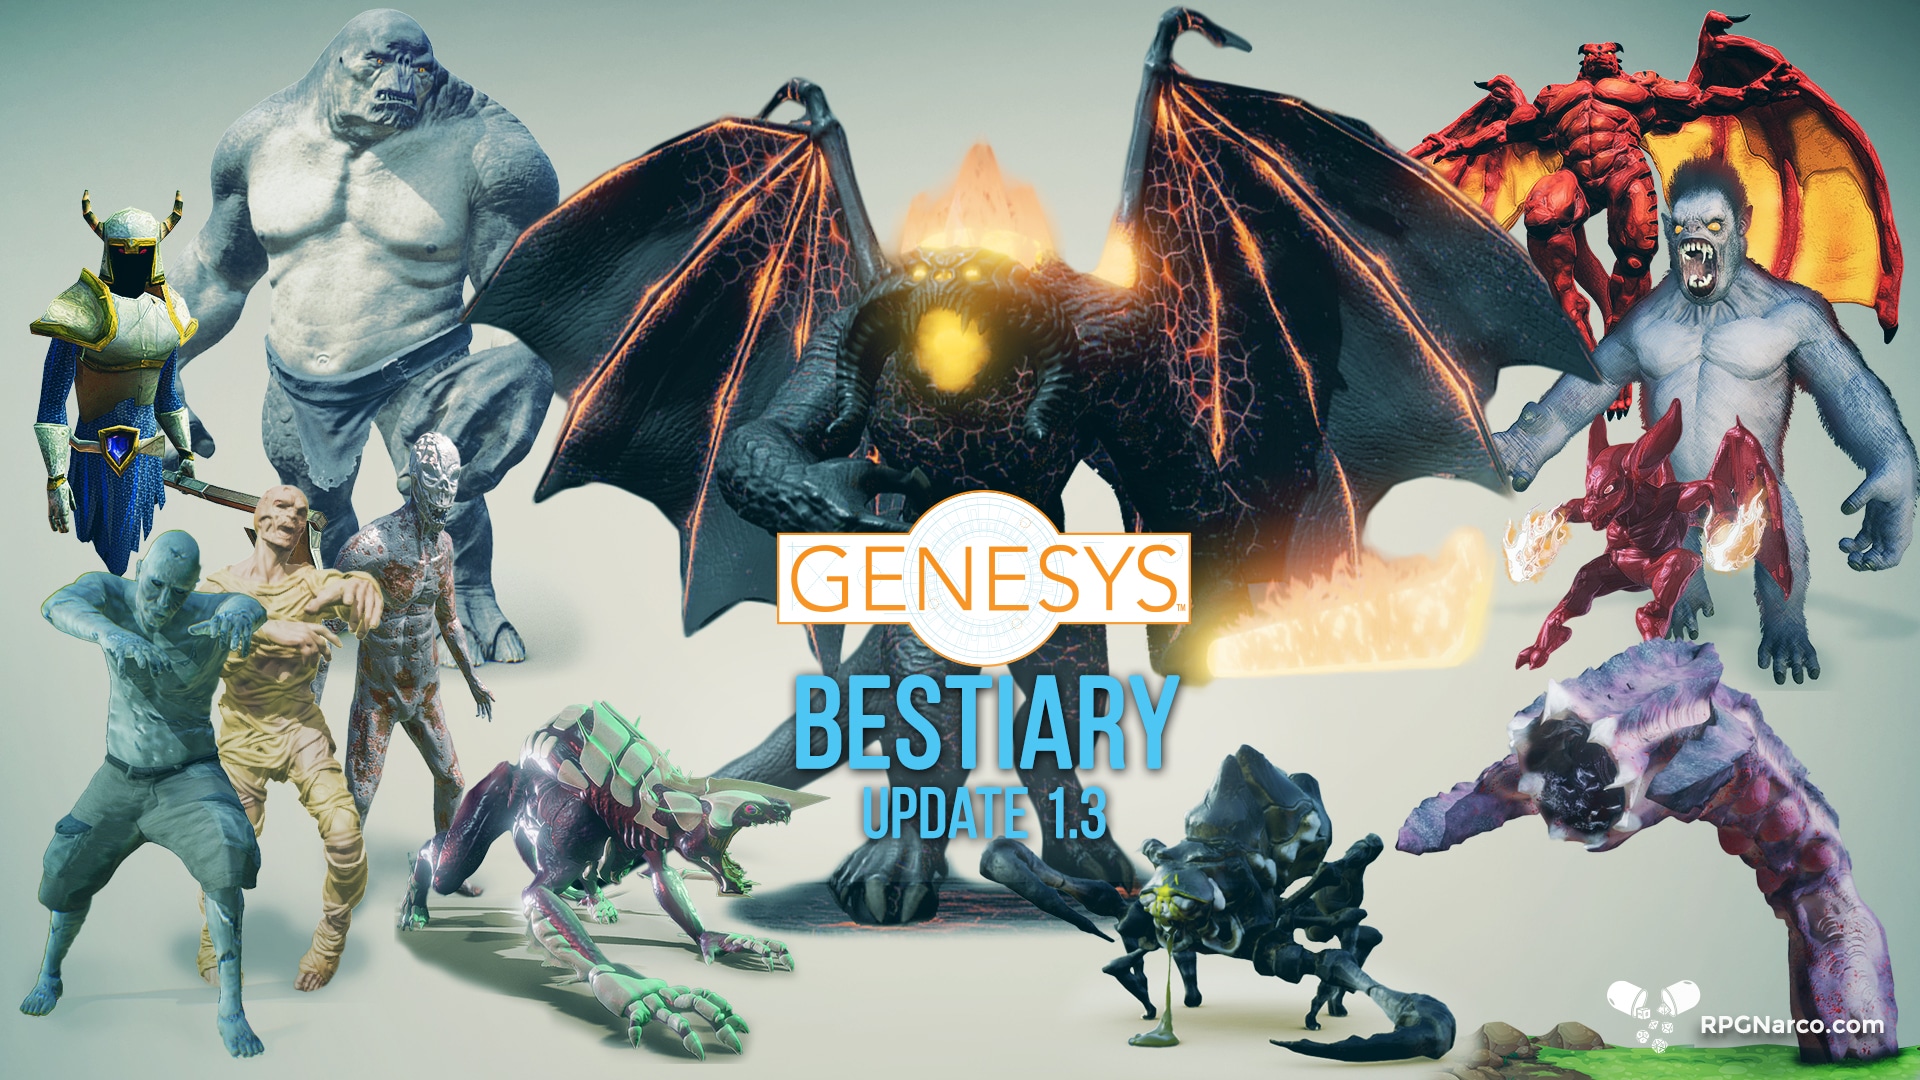 Genesys Bestiary Third Update